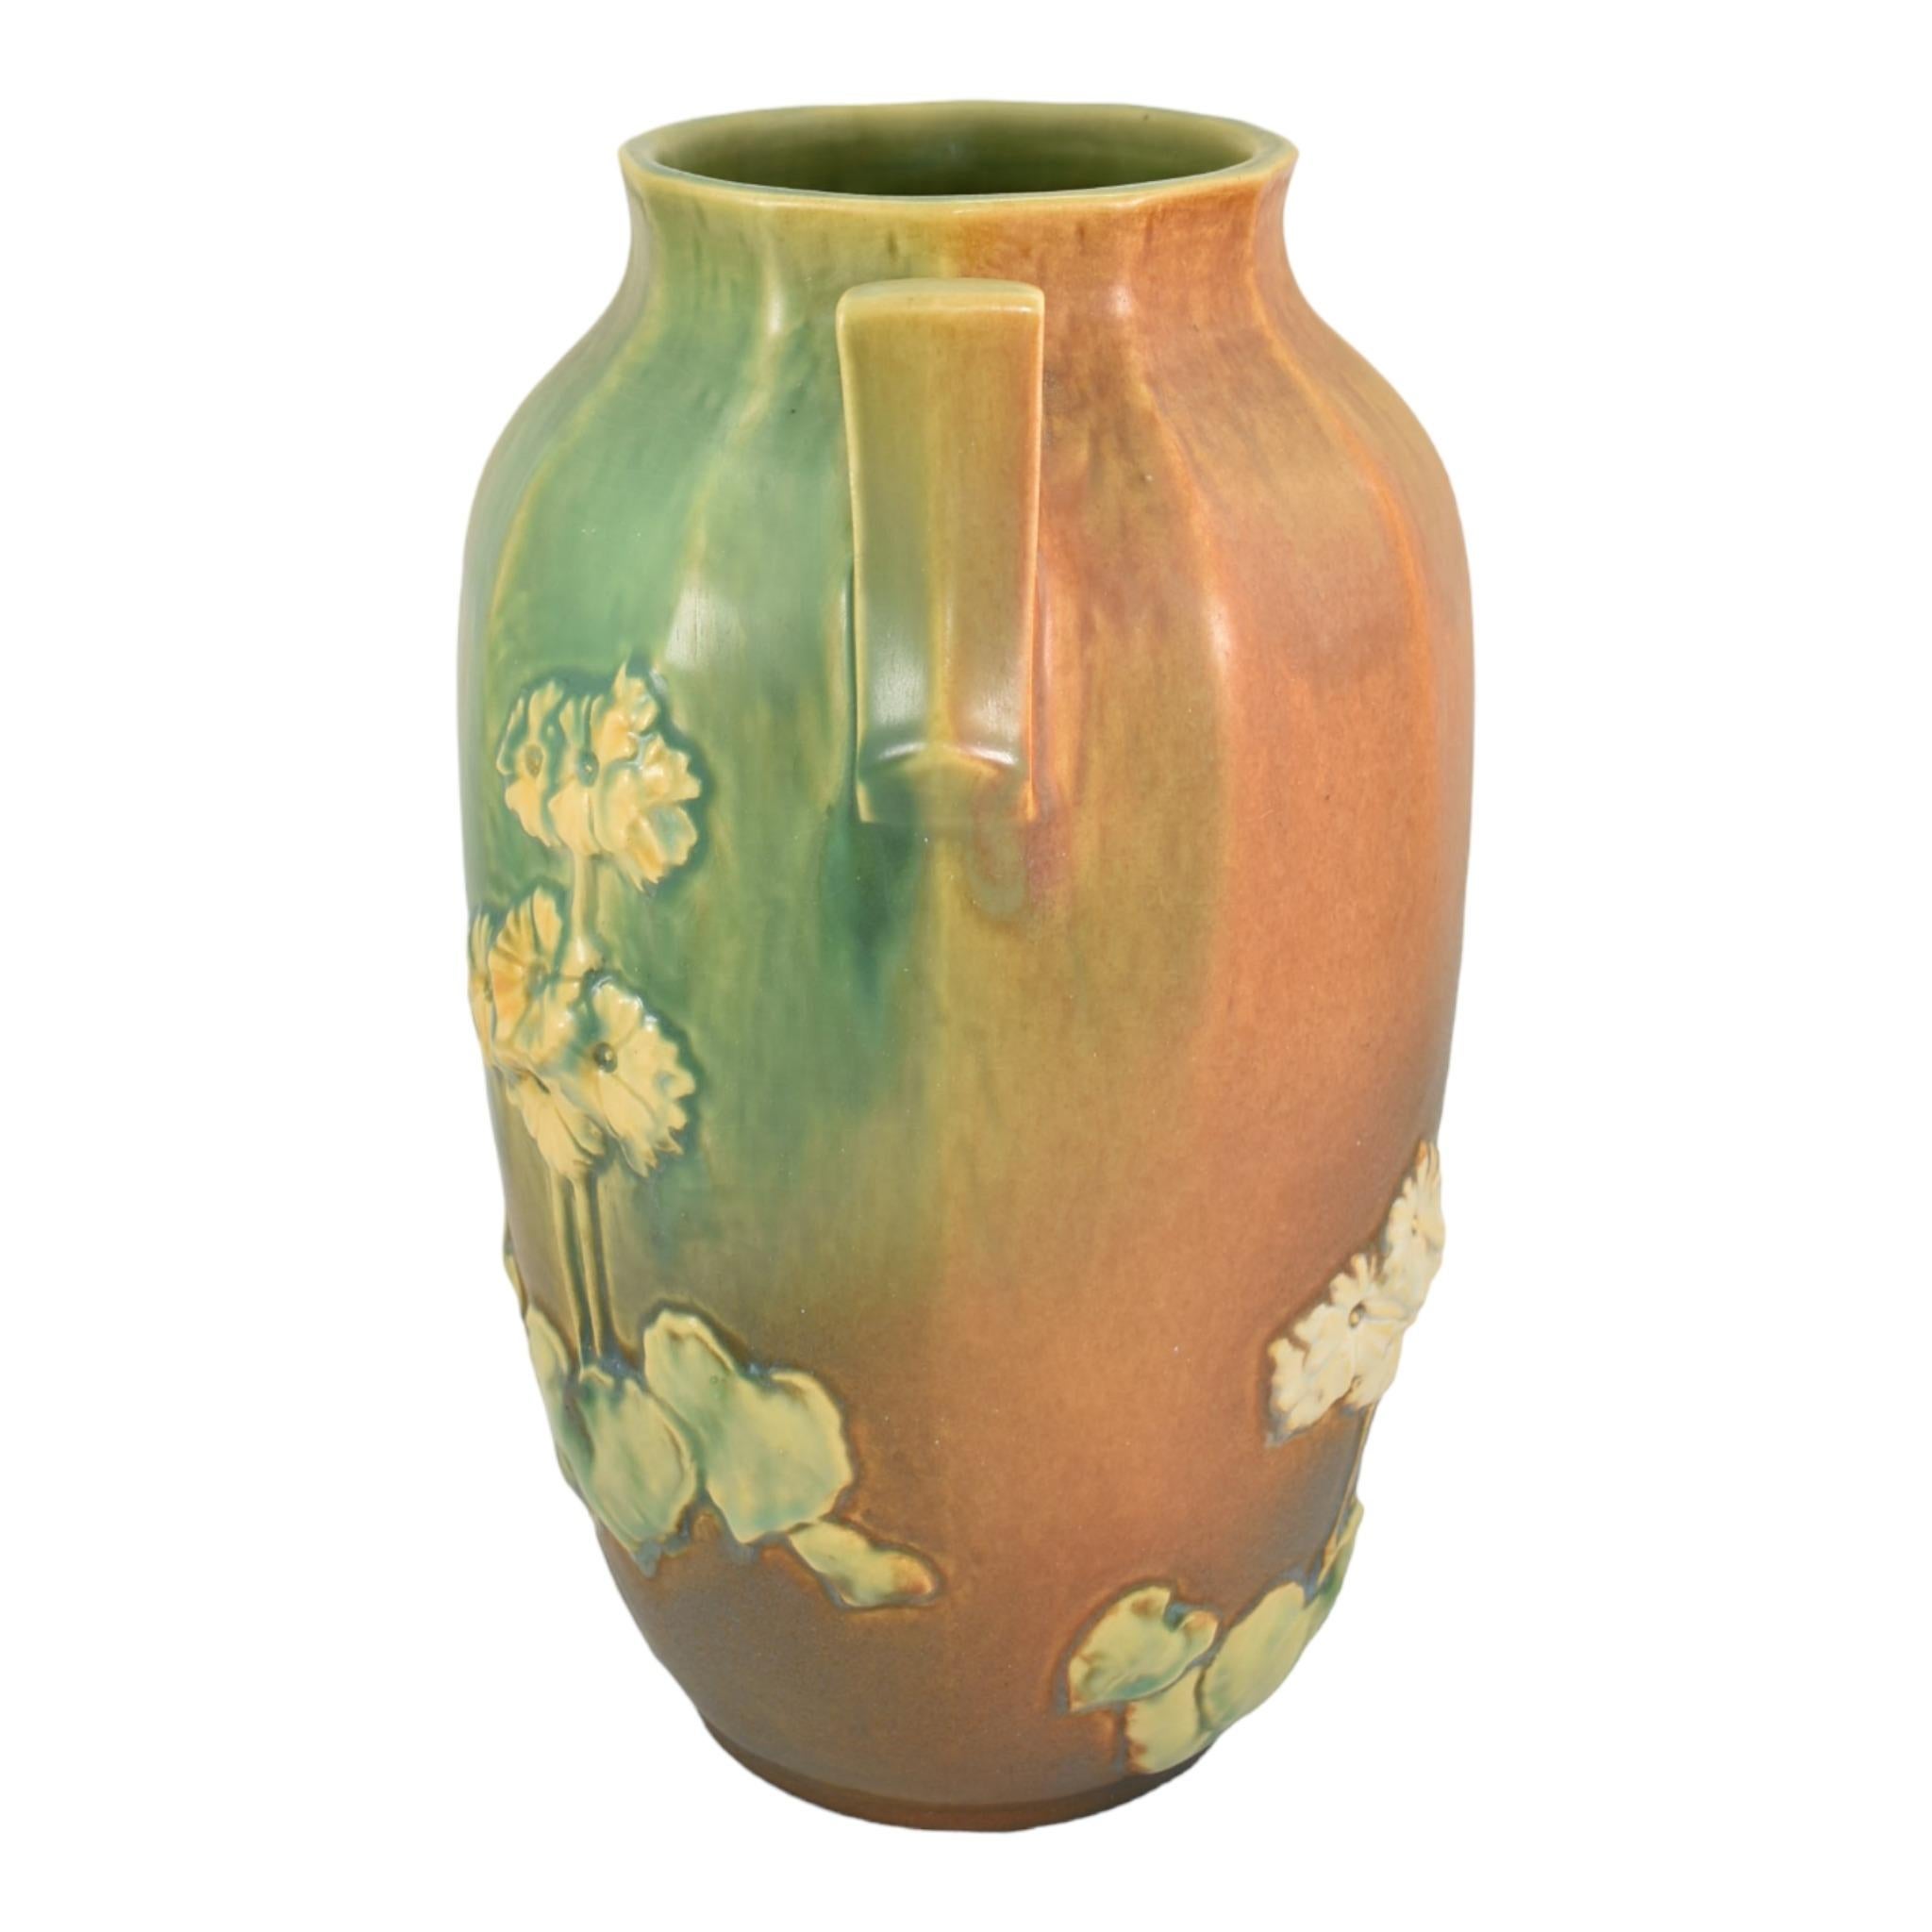 Roseville Primrose Experimentale Dreifachglasur-Vase aus Keramik 1936 Vintage-Keramik
Außergewöhnliche, einmalige Roseville Experimentiervase mit Primelblüten.
Hervorragende Form, Farbe und Glasur.
Ausgezeichneter Zustand. Sehr kleine professionelle